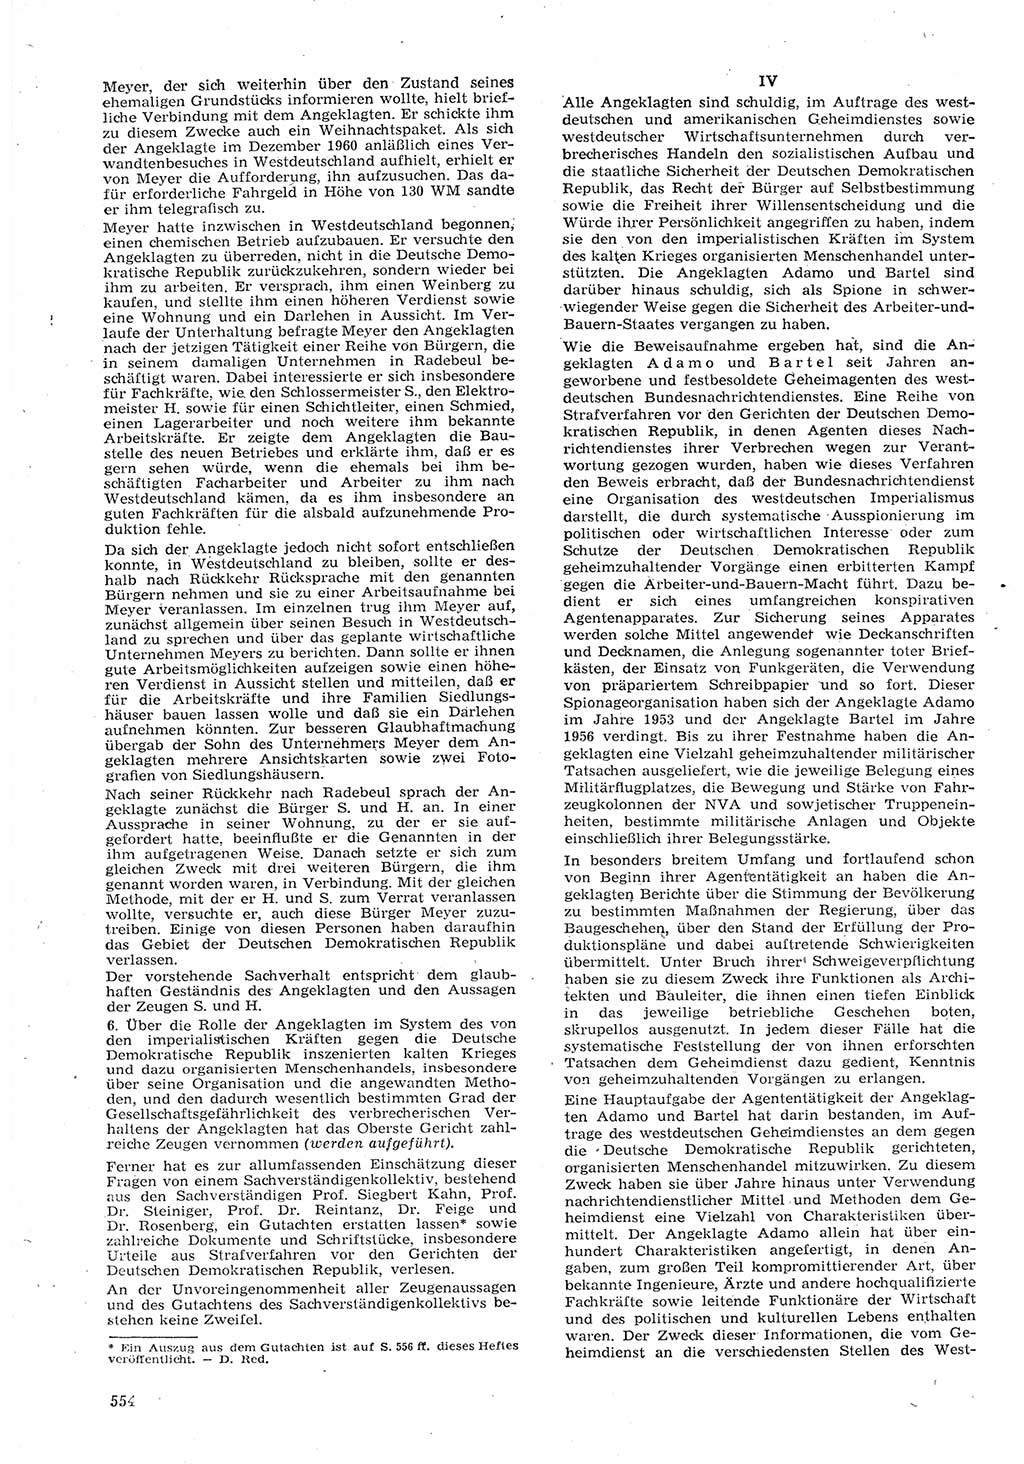 Neue Justiz (NJ), Zeitschrift für Recht und Rechtswissenschaft [Deutsche Demokratische Republik (DDR)], 15. Jahrgang 1961, Seite 554 (NJ DDR 1961, S. 554)